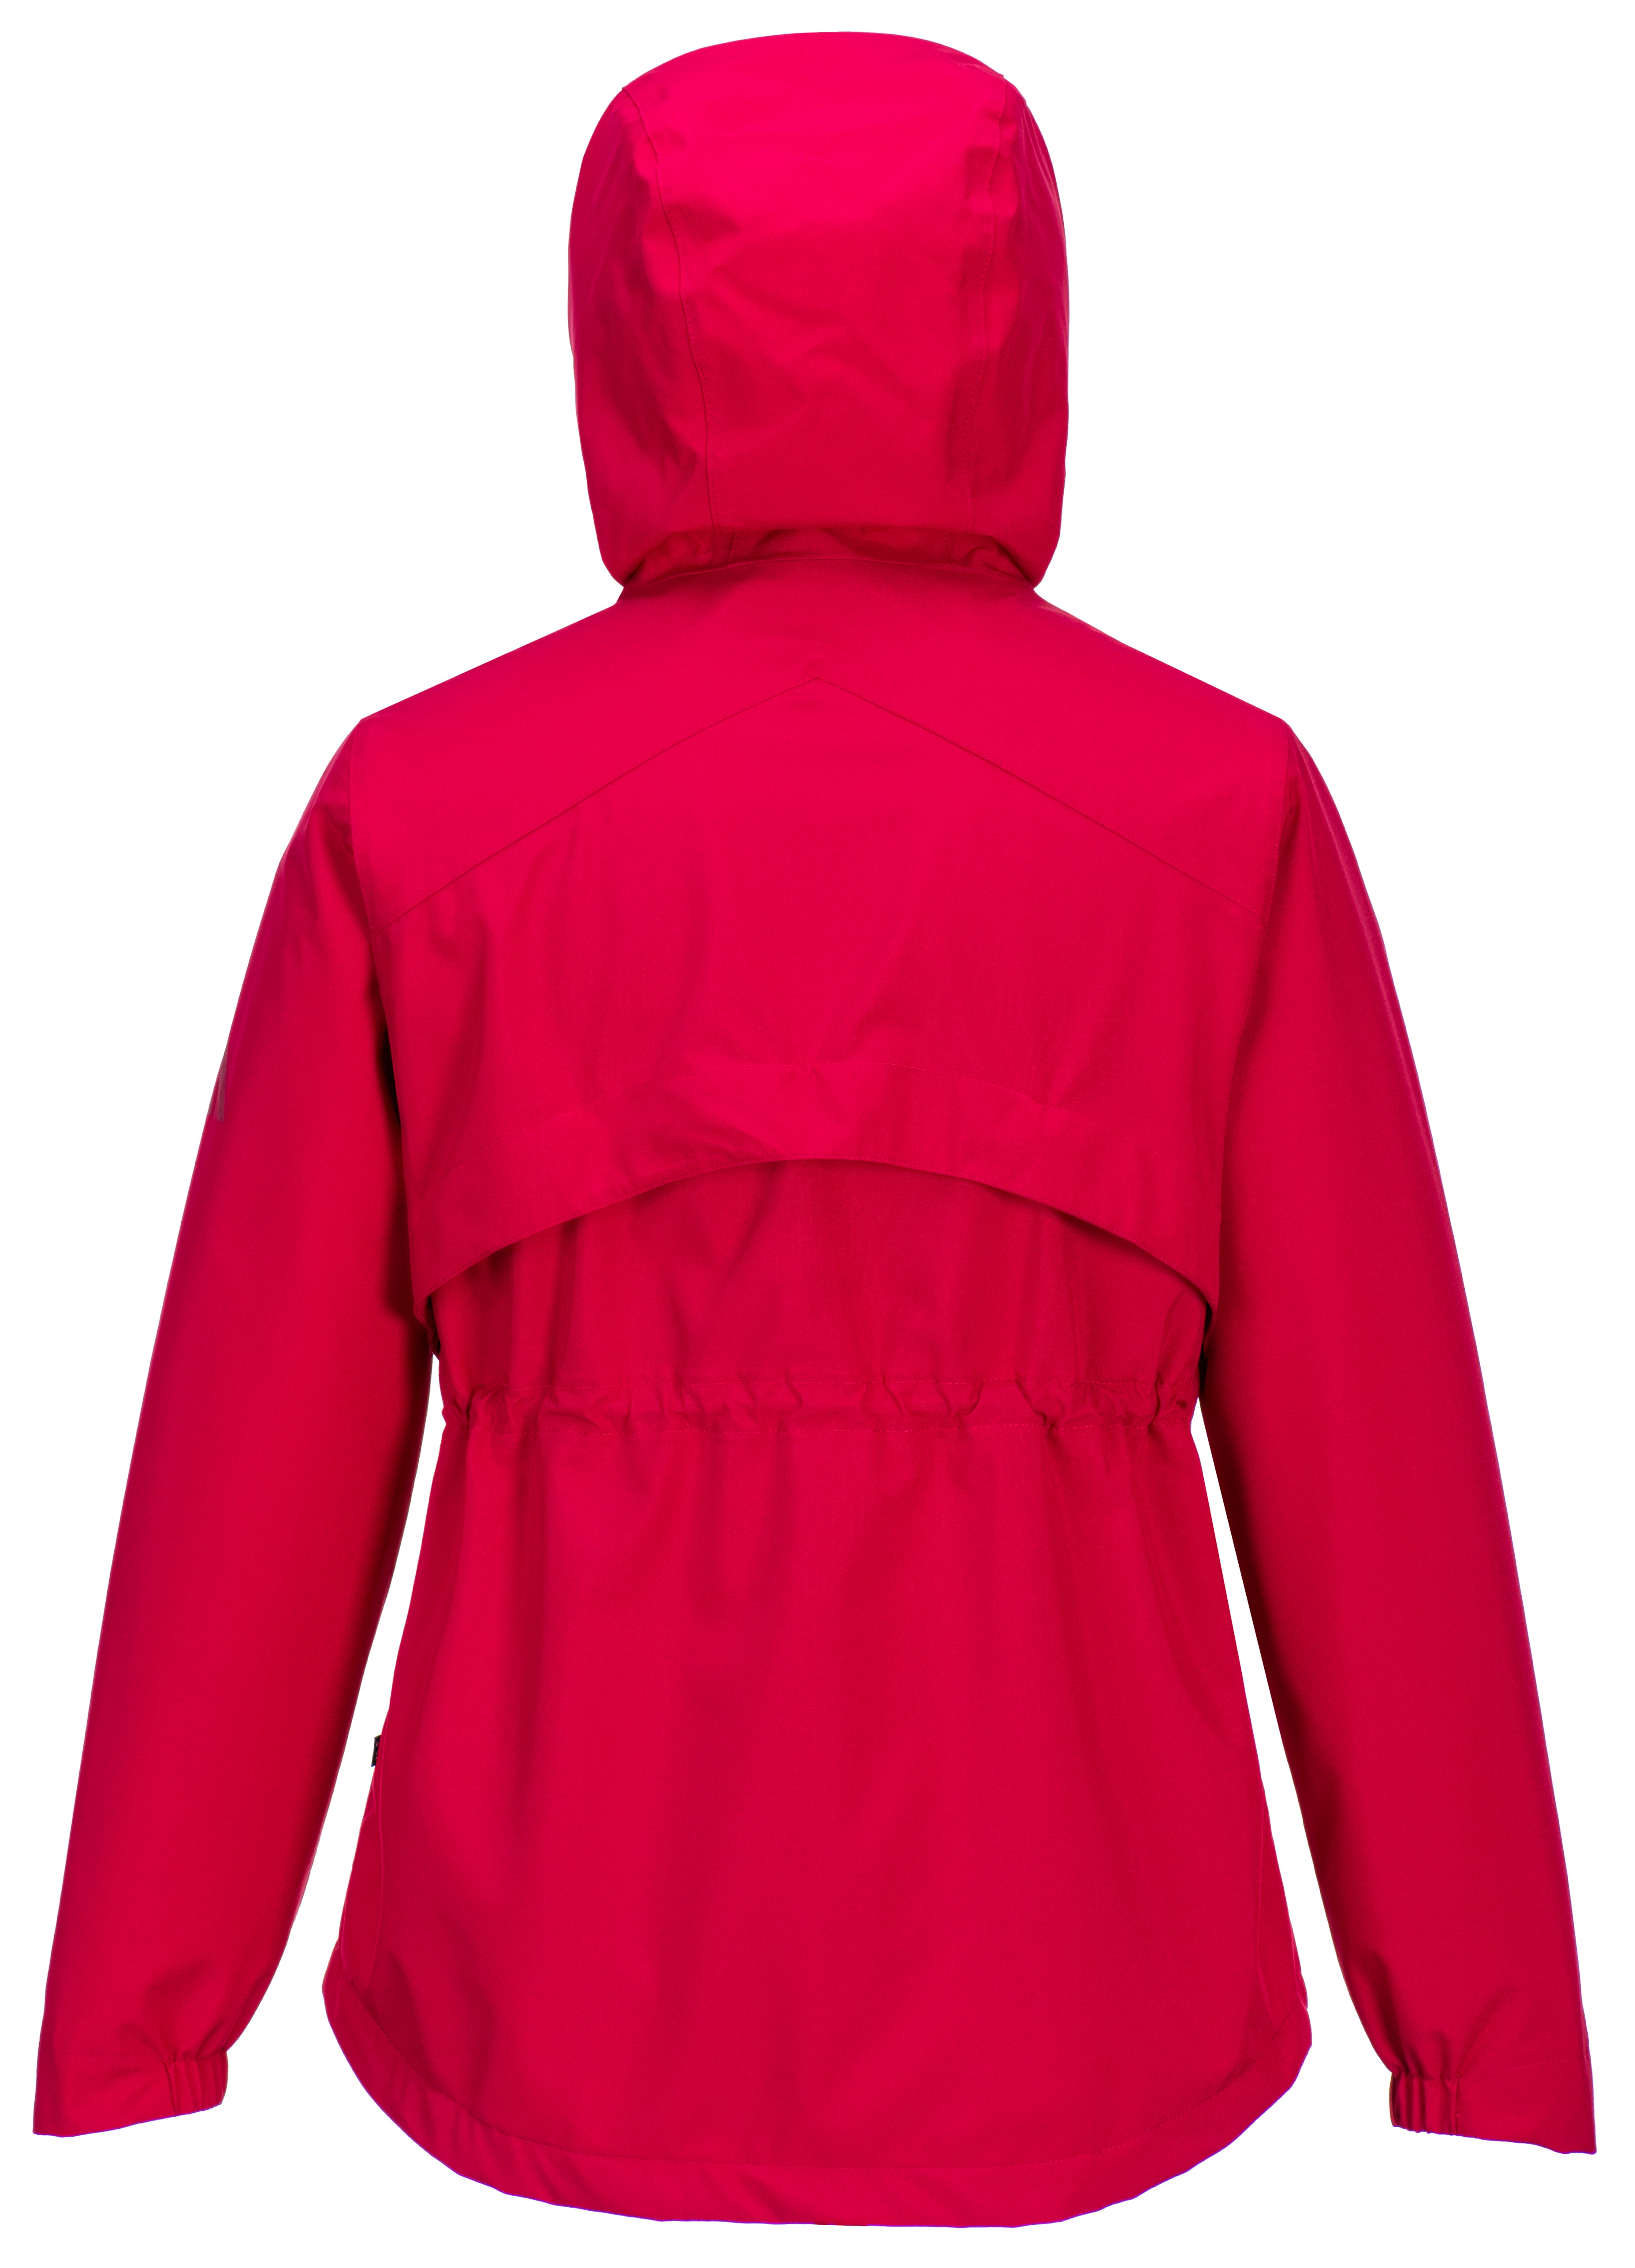 Portwest Women's Dunraven Rain Jacket | PORTWEST | Portwest - The Outdoor Shop